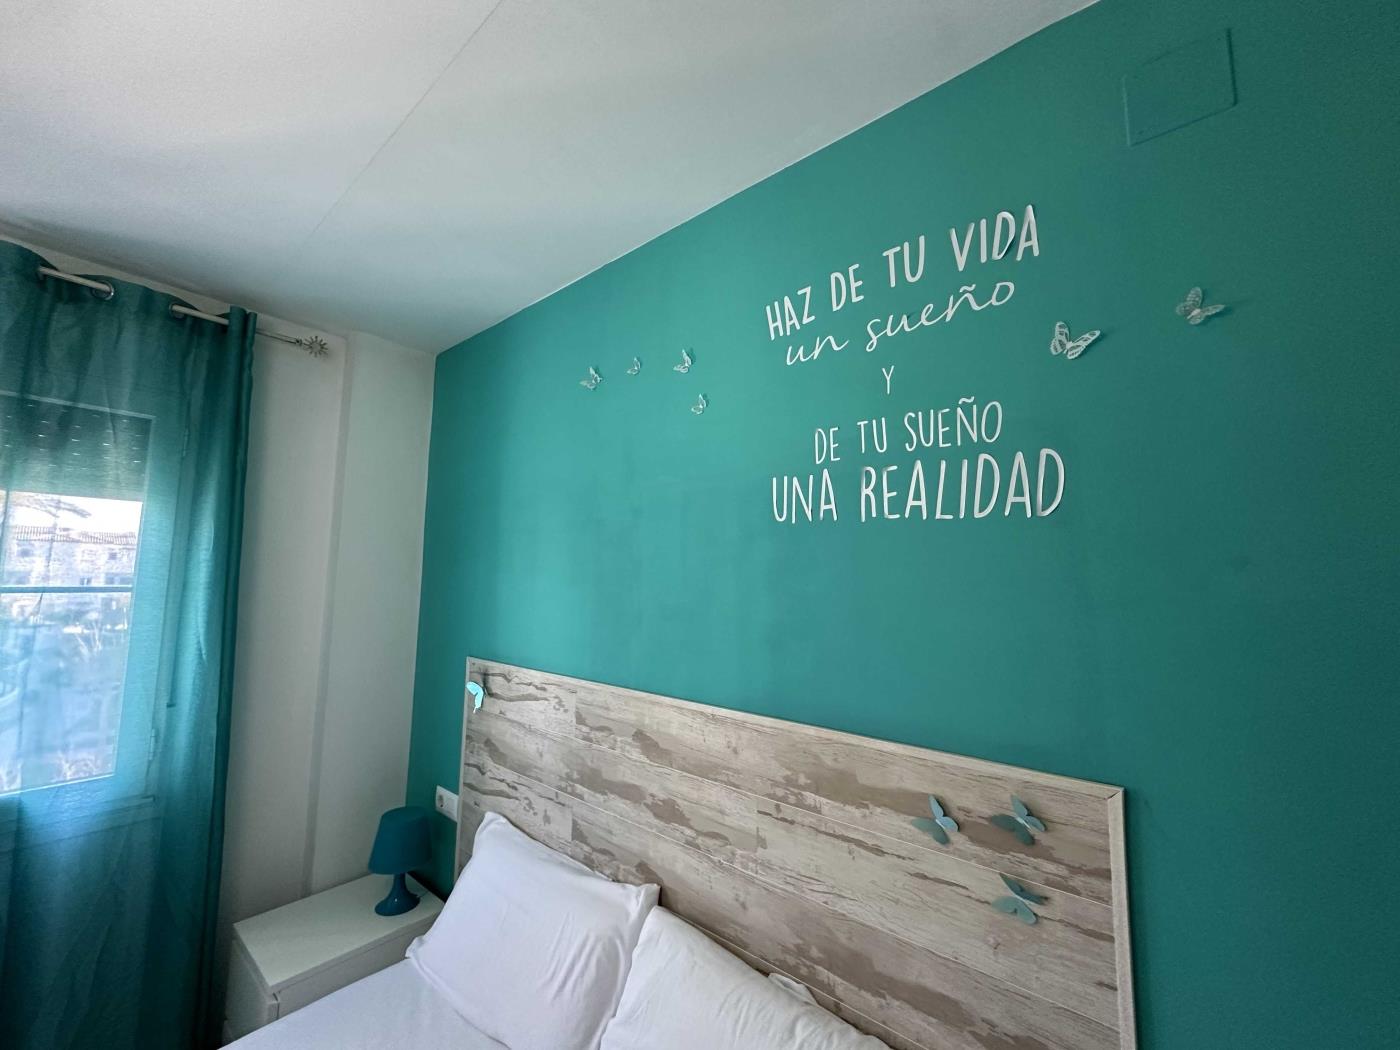 Ref 18c. 2 BEDROOM APARTMENT FIRST FLOOR in Chiclana de la Frontera